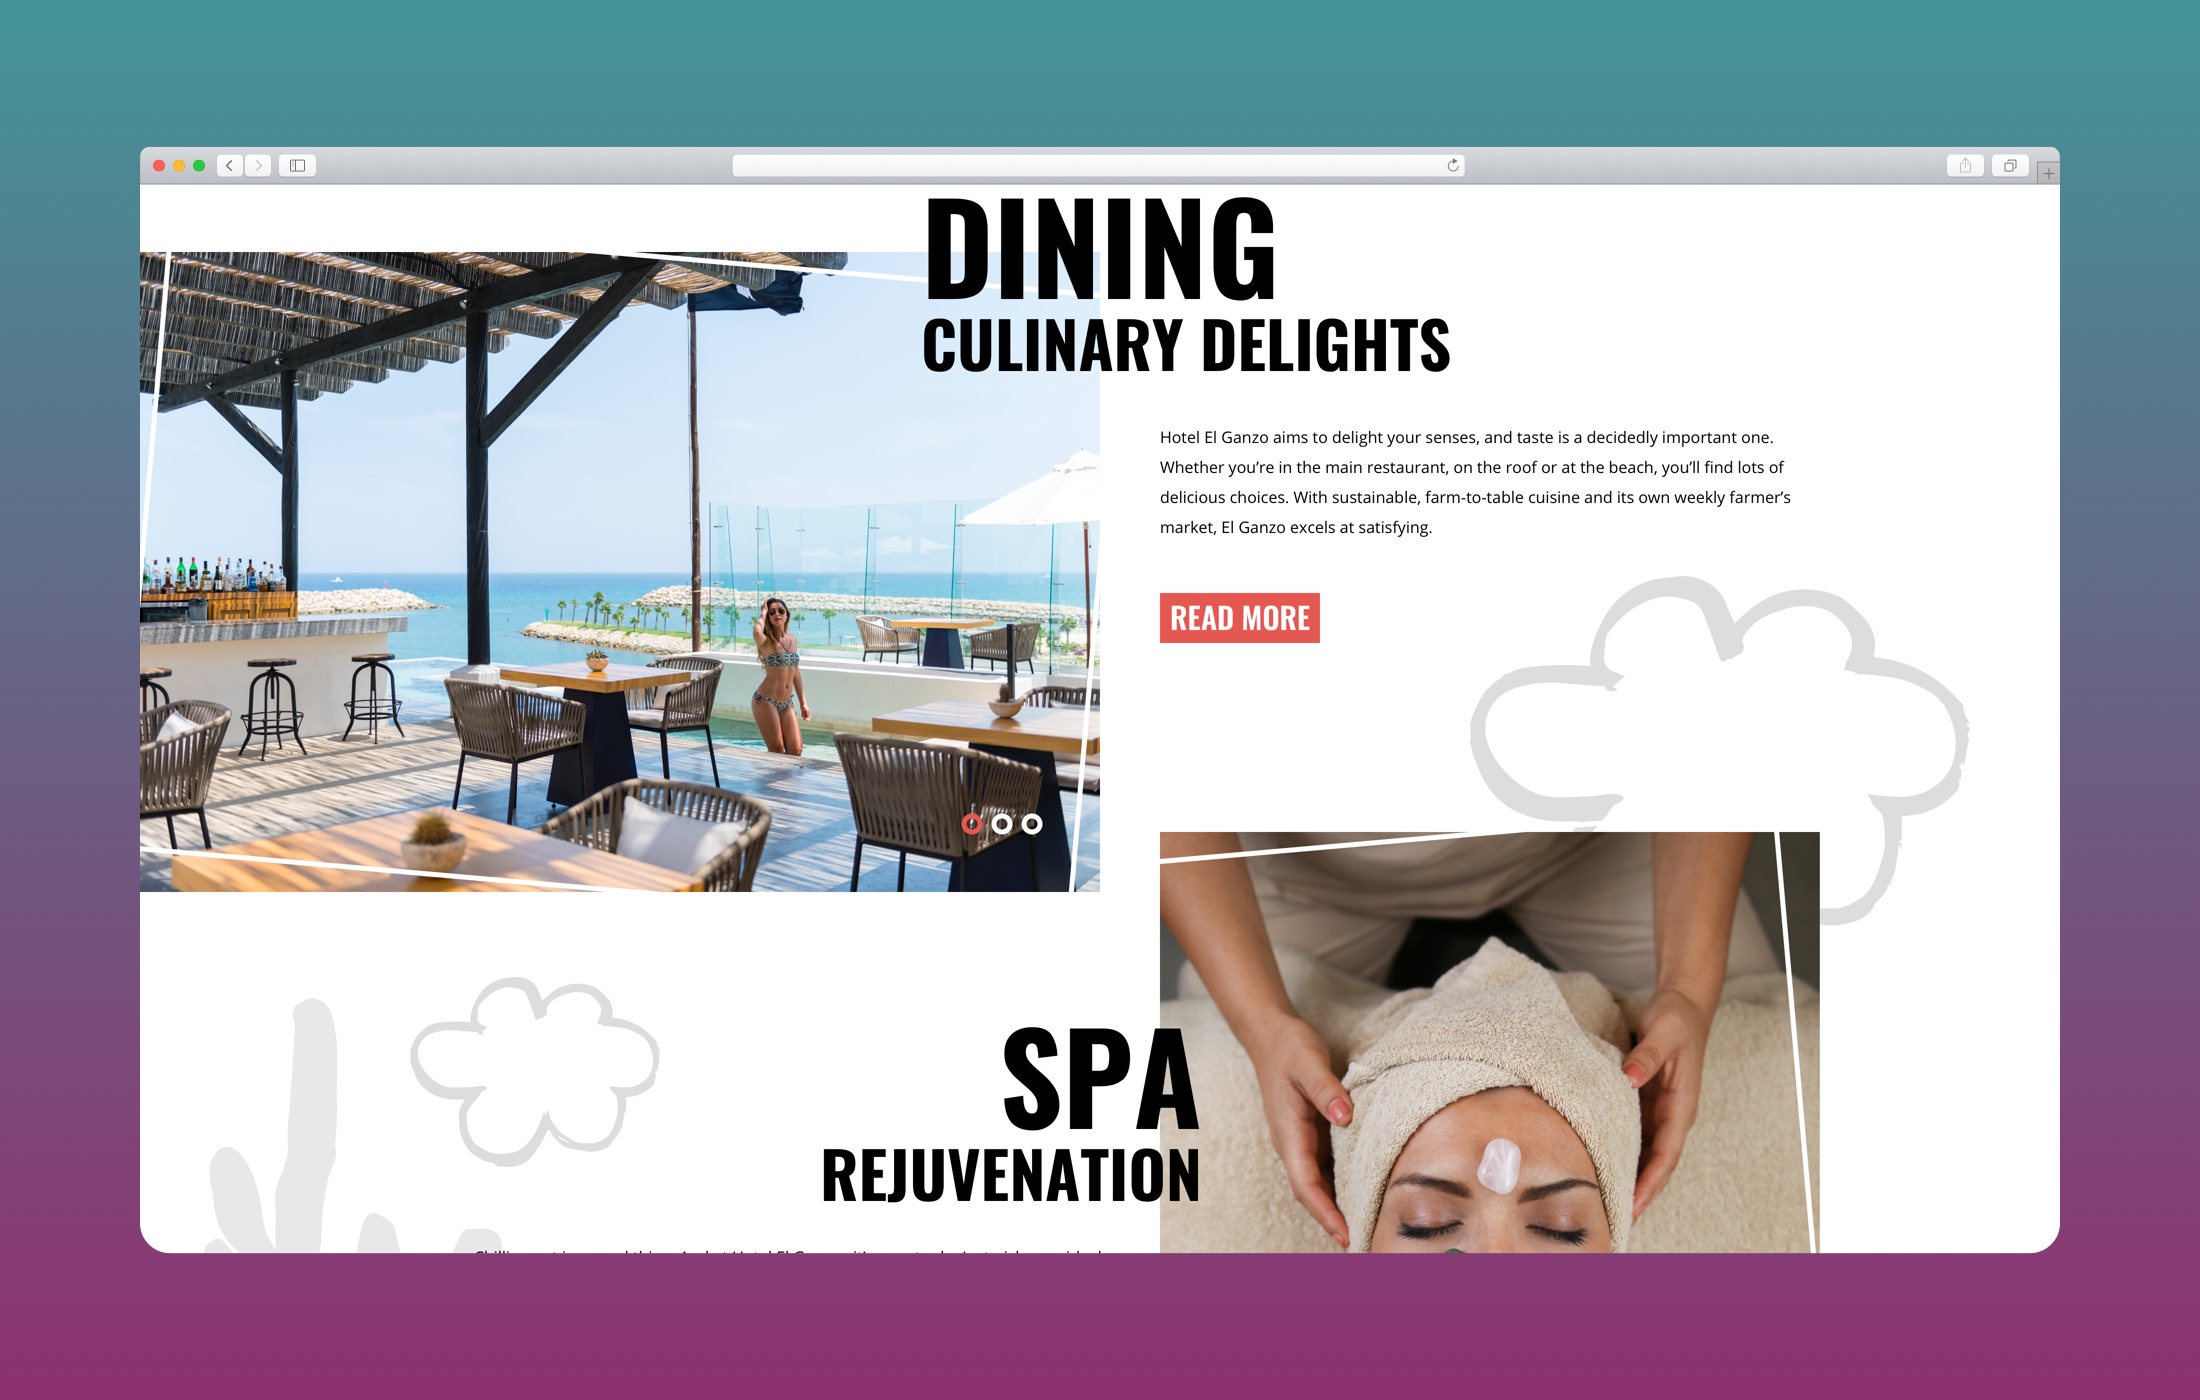 El Ganzo – Art Hotel Web Design